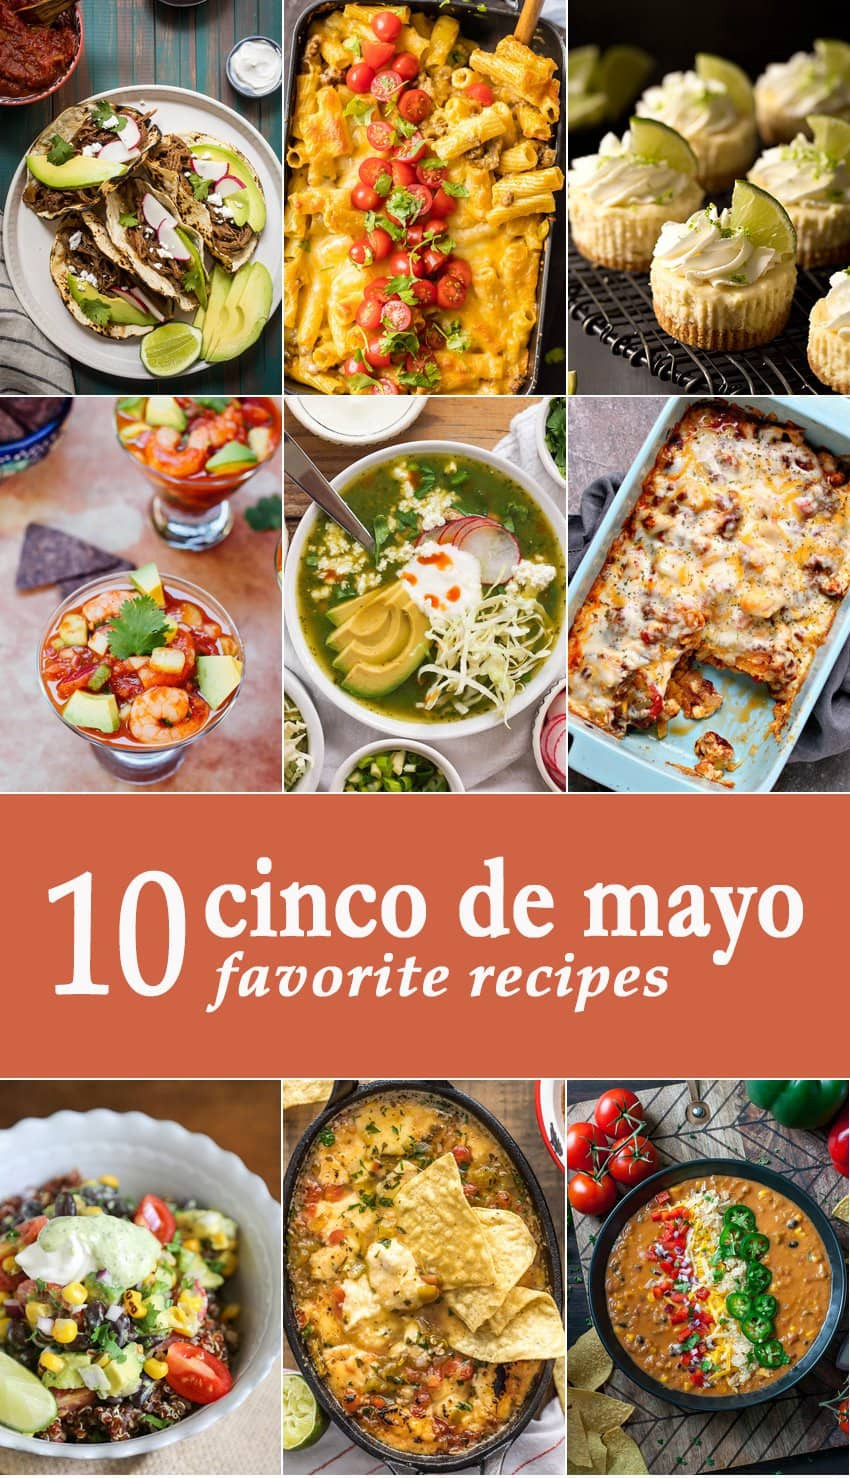 Cinco De Mayo Food Ideas
 10 Favorite Cinco de Mayo Recipes The Cookie Rookie